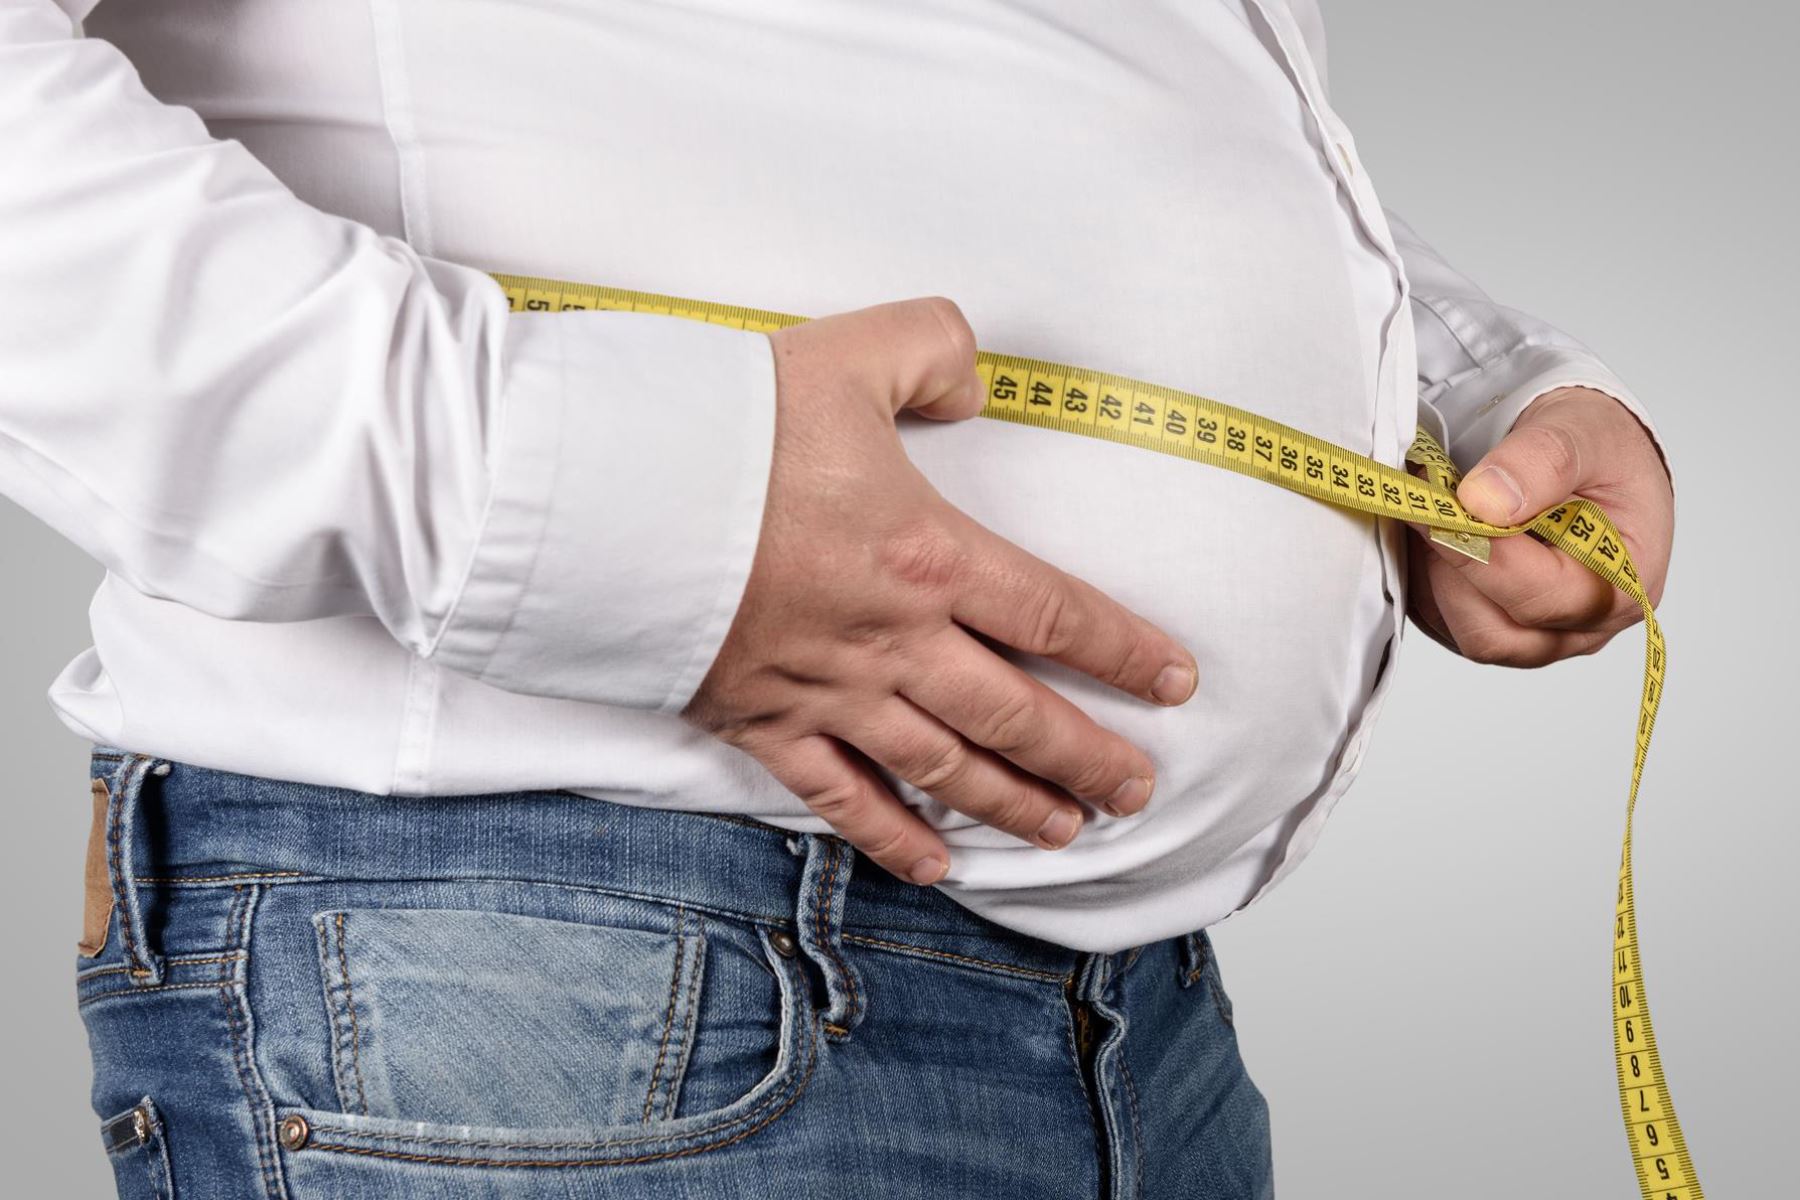 Los hombres con sobrepeso y obesidad tienen más probabilidades de morir de cáncer de próstata | El Imparcial de Oaxaca